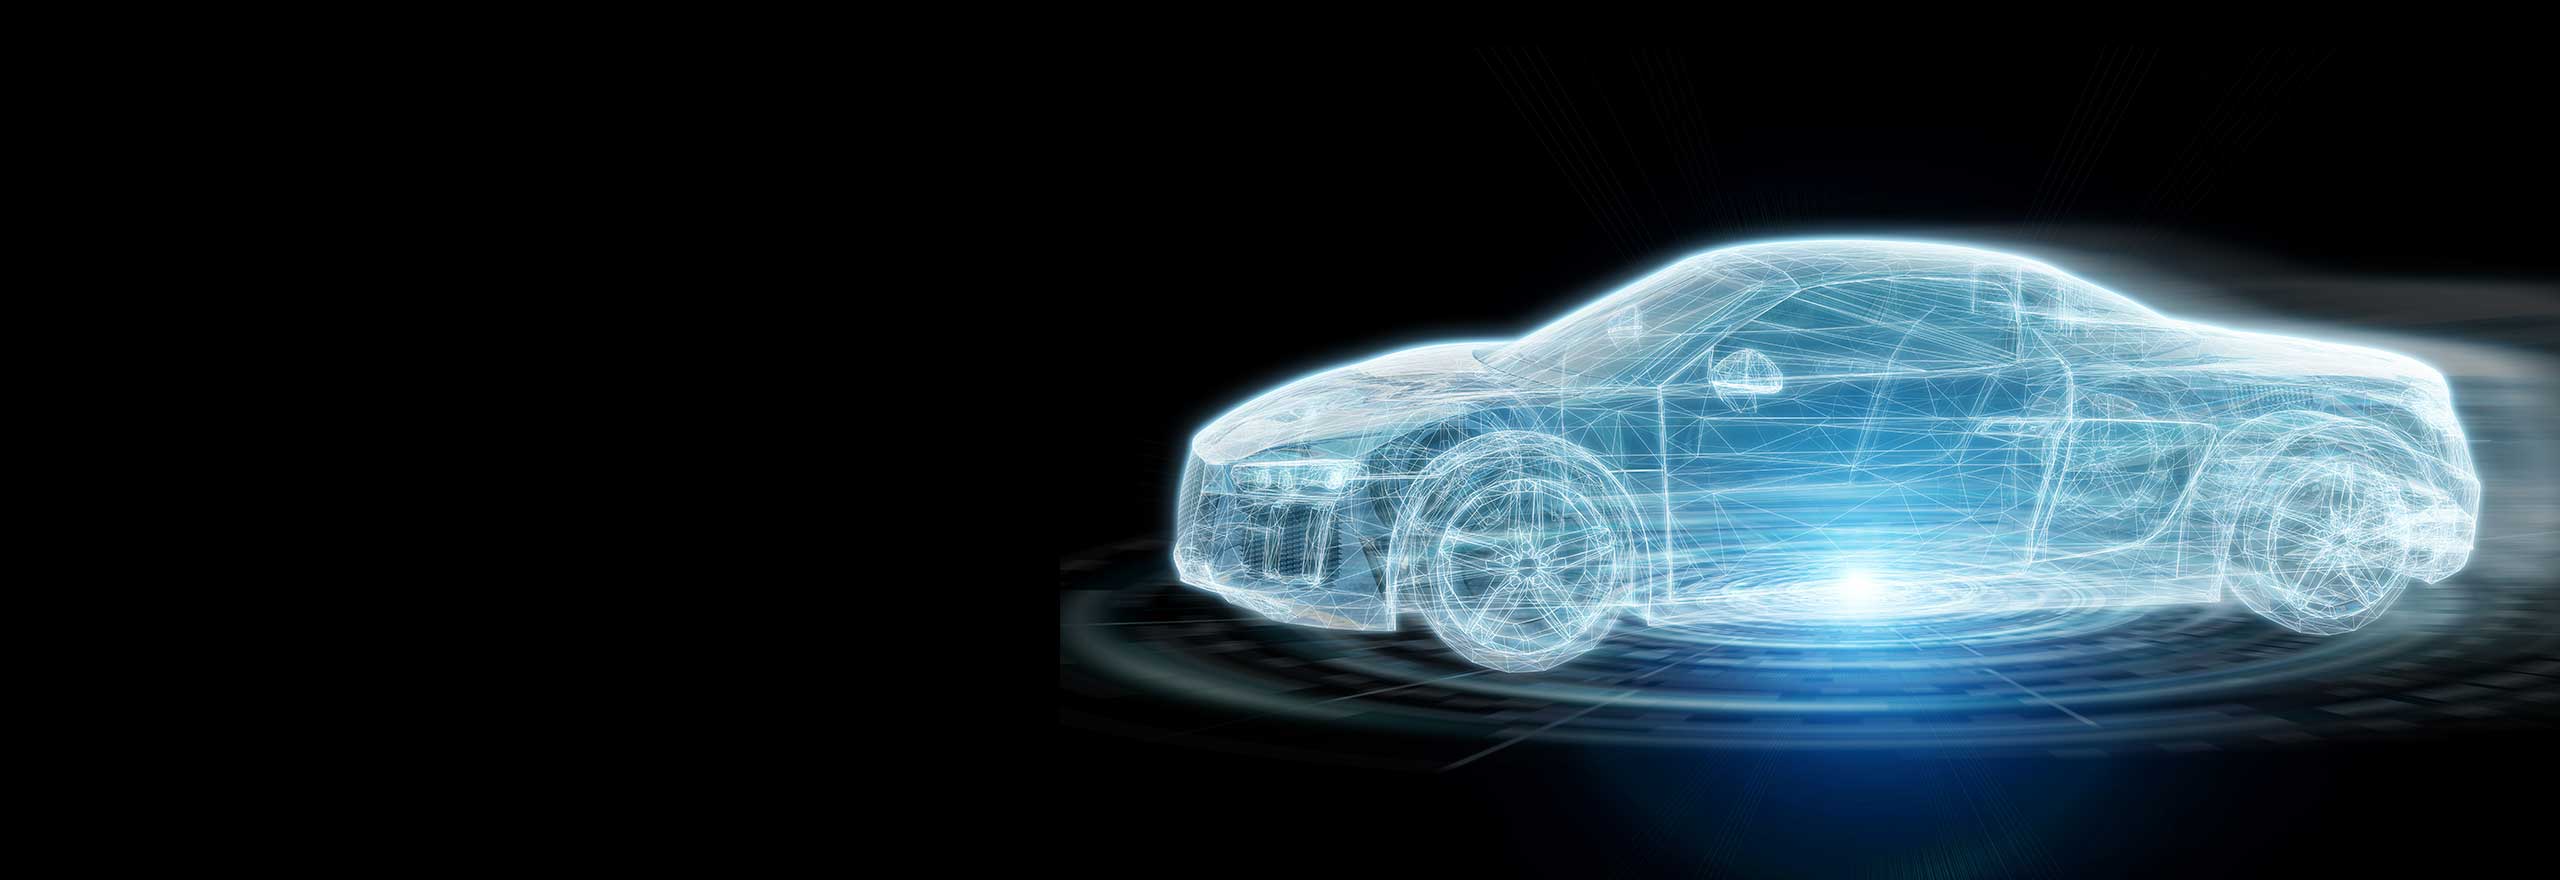 Modelo externo digital de carro para simulação